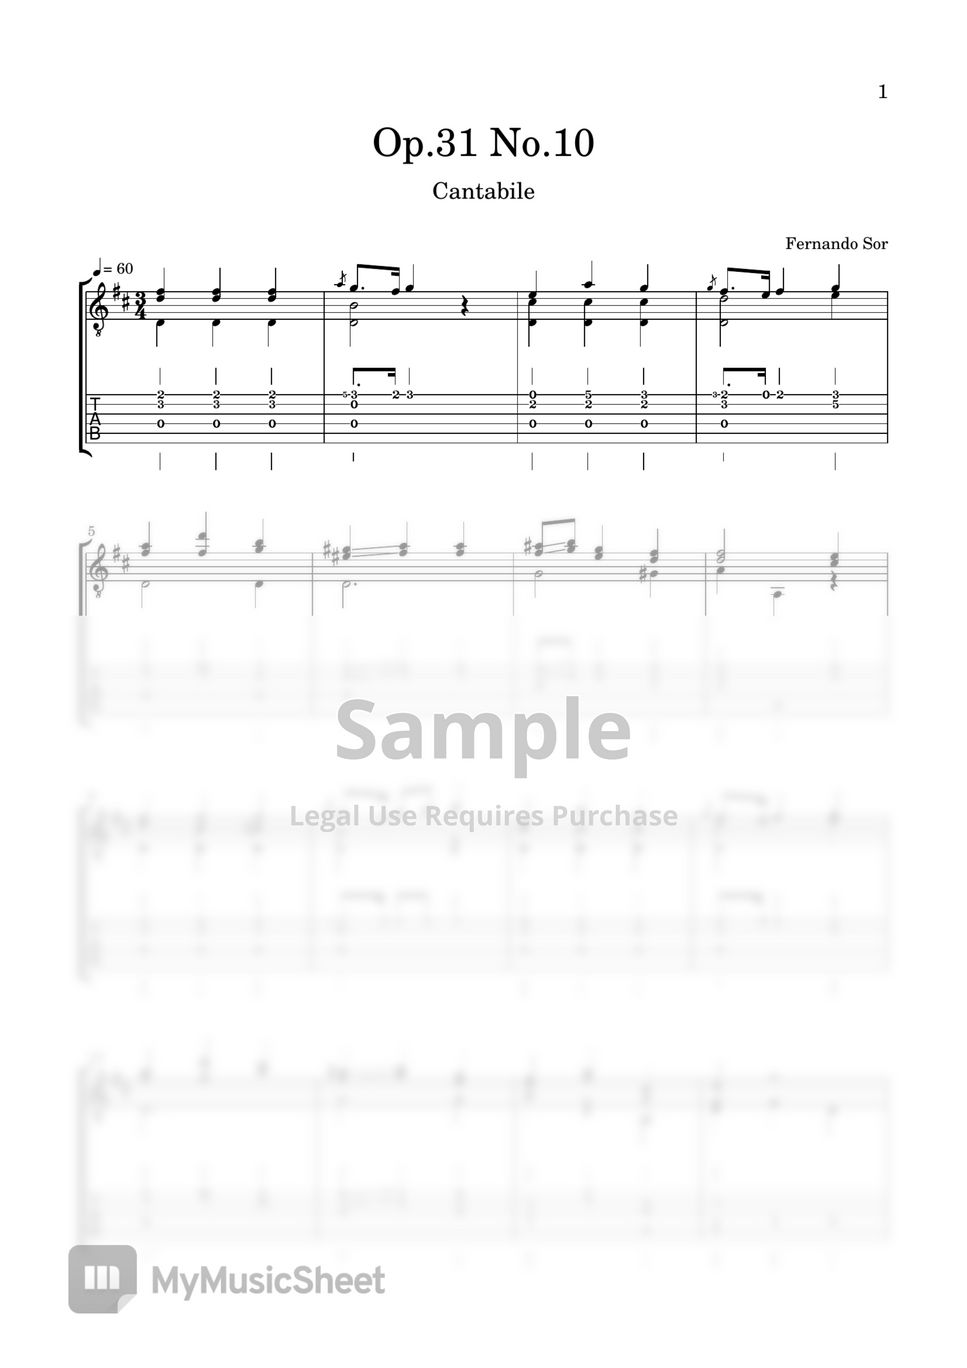 Fernando Sor - Op.31 No.10 (Cantabile) by LemonTree